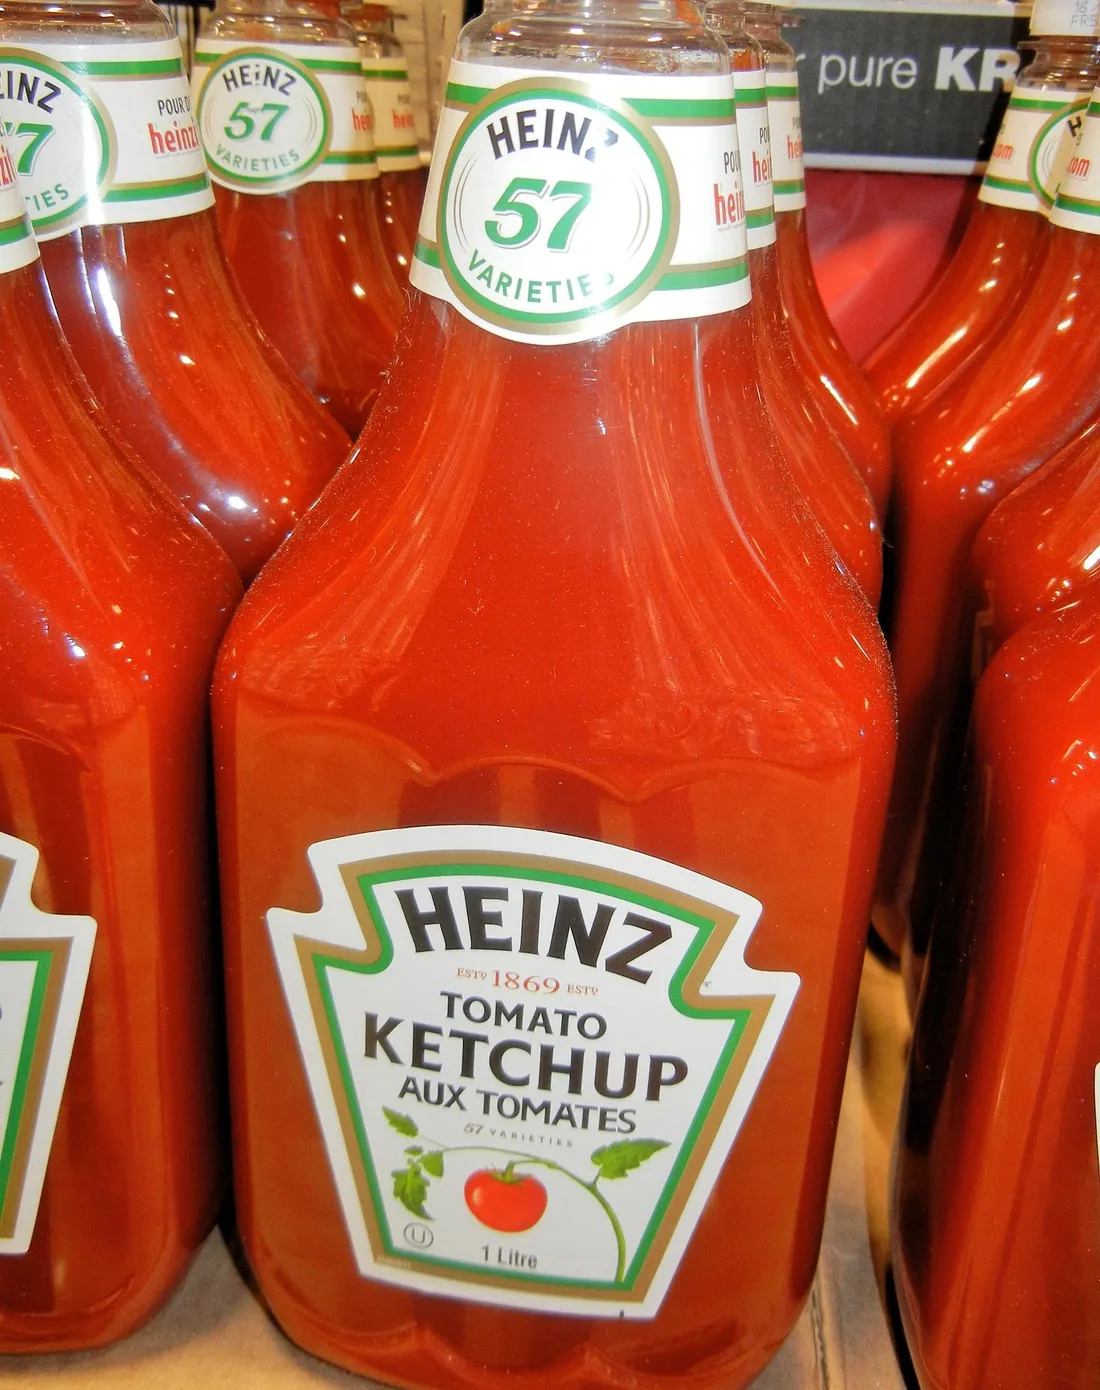 Un naufragé survit 24 jours en mer grâce à une bouteille de ketchup, Heinz lui fait un énorme cadeau